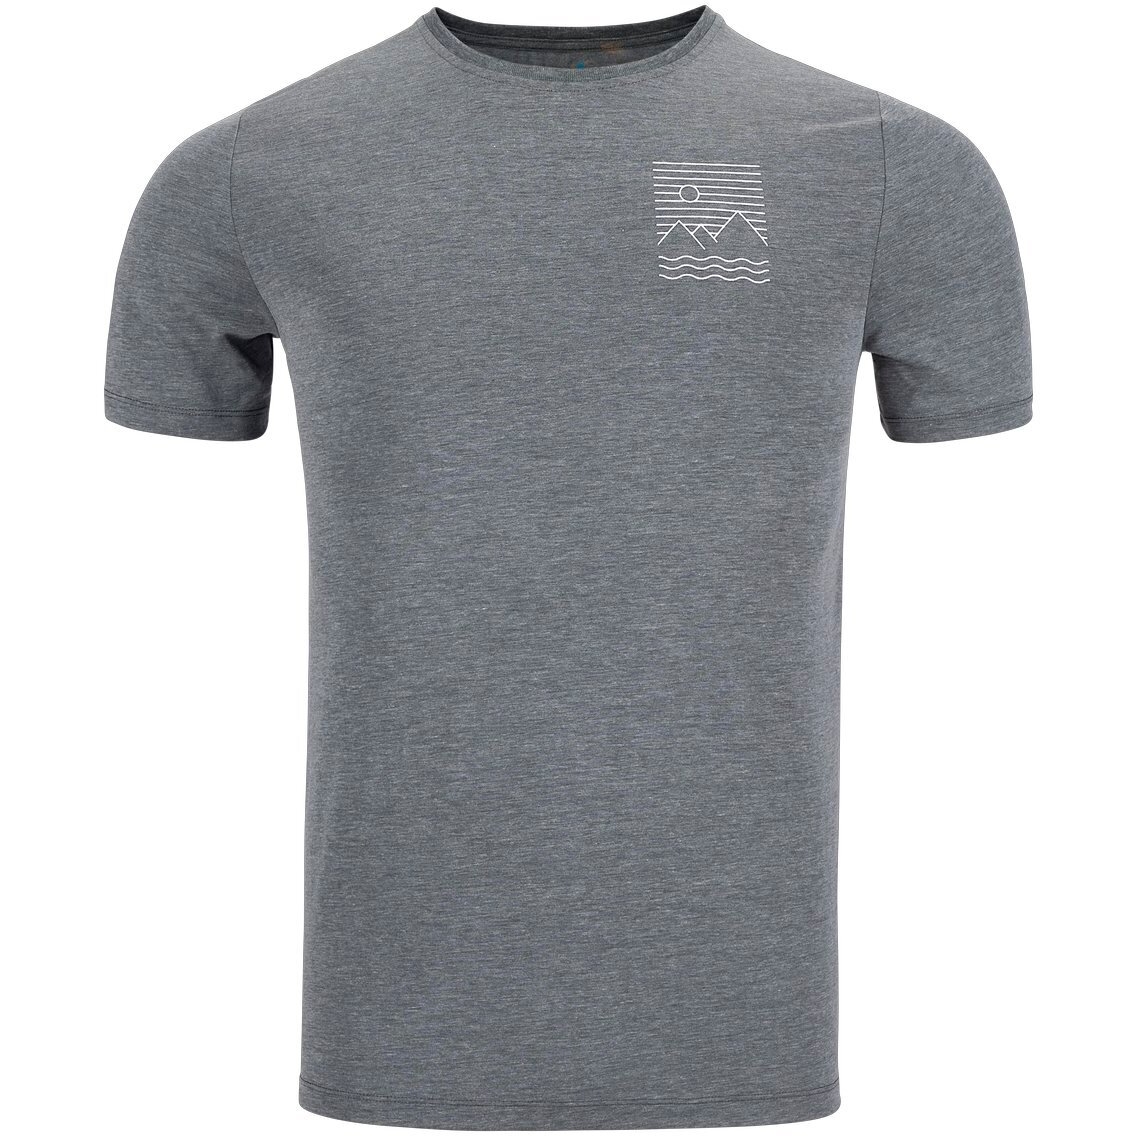 Picture of Odlo Ascent 365 Linear T-Shirt Men - black melange